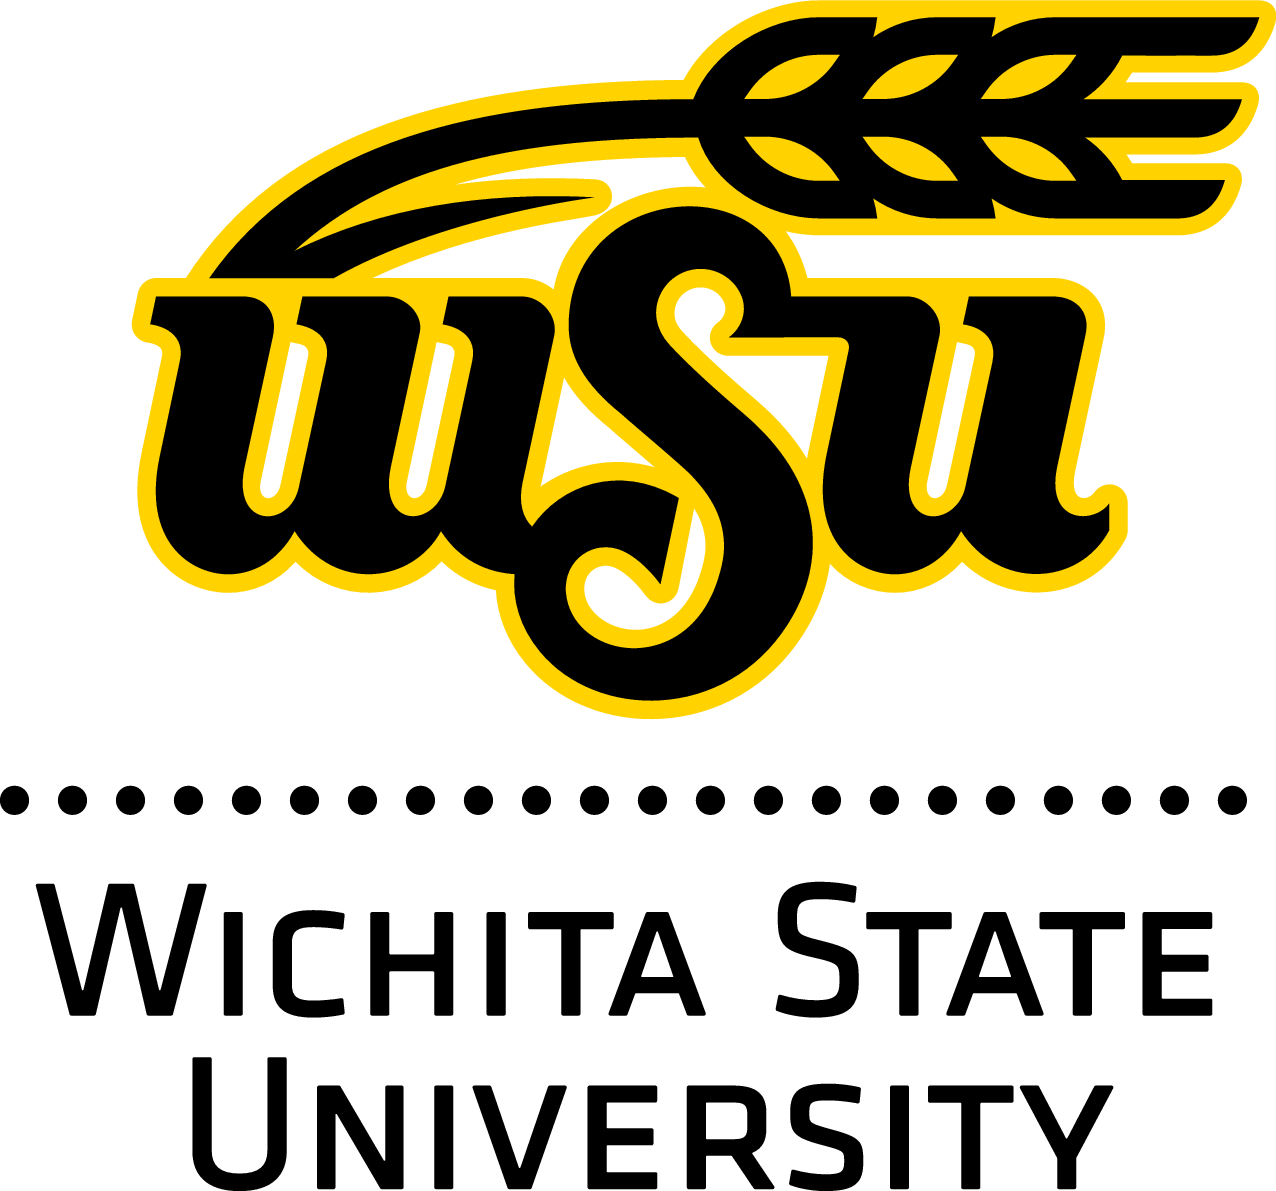 Wichita State University University Info 51 Masters in English